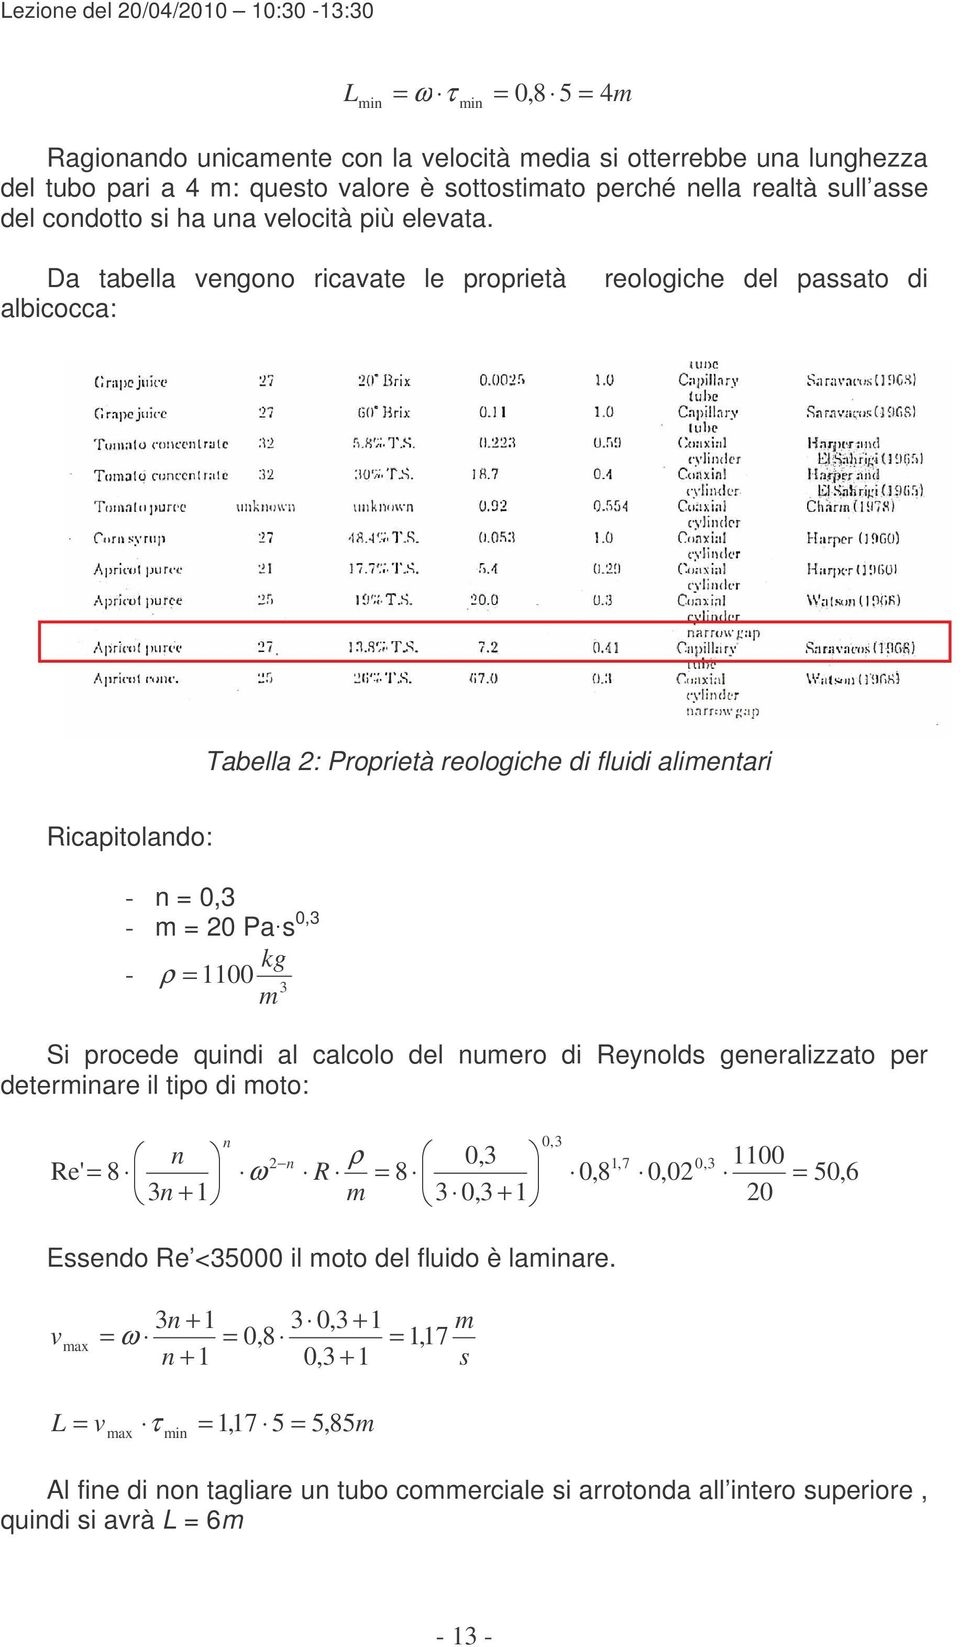 Da tabella vegoo ricavate le proprietà albicocca: reologiche del passato di Tabella : Proprietà reologiche di fluidi alimetari icapitolado: - 0,3 - m 0 Pas 0,3 kg - ρ 00 m 3 Si procede